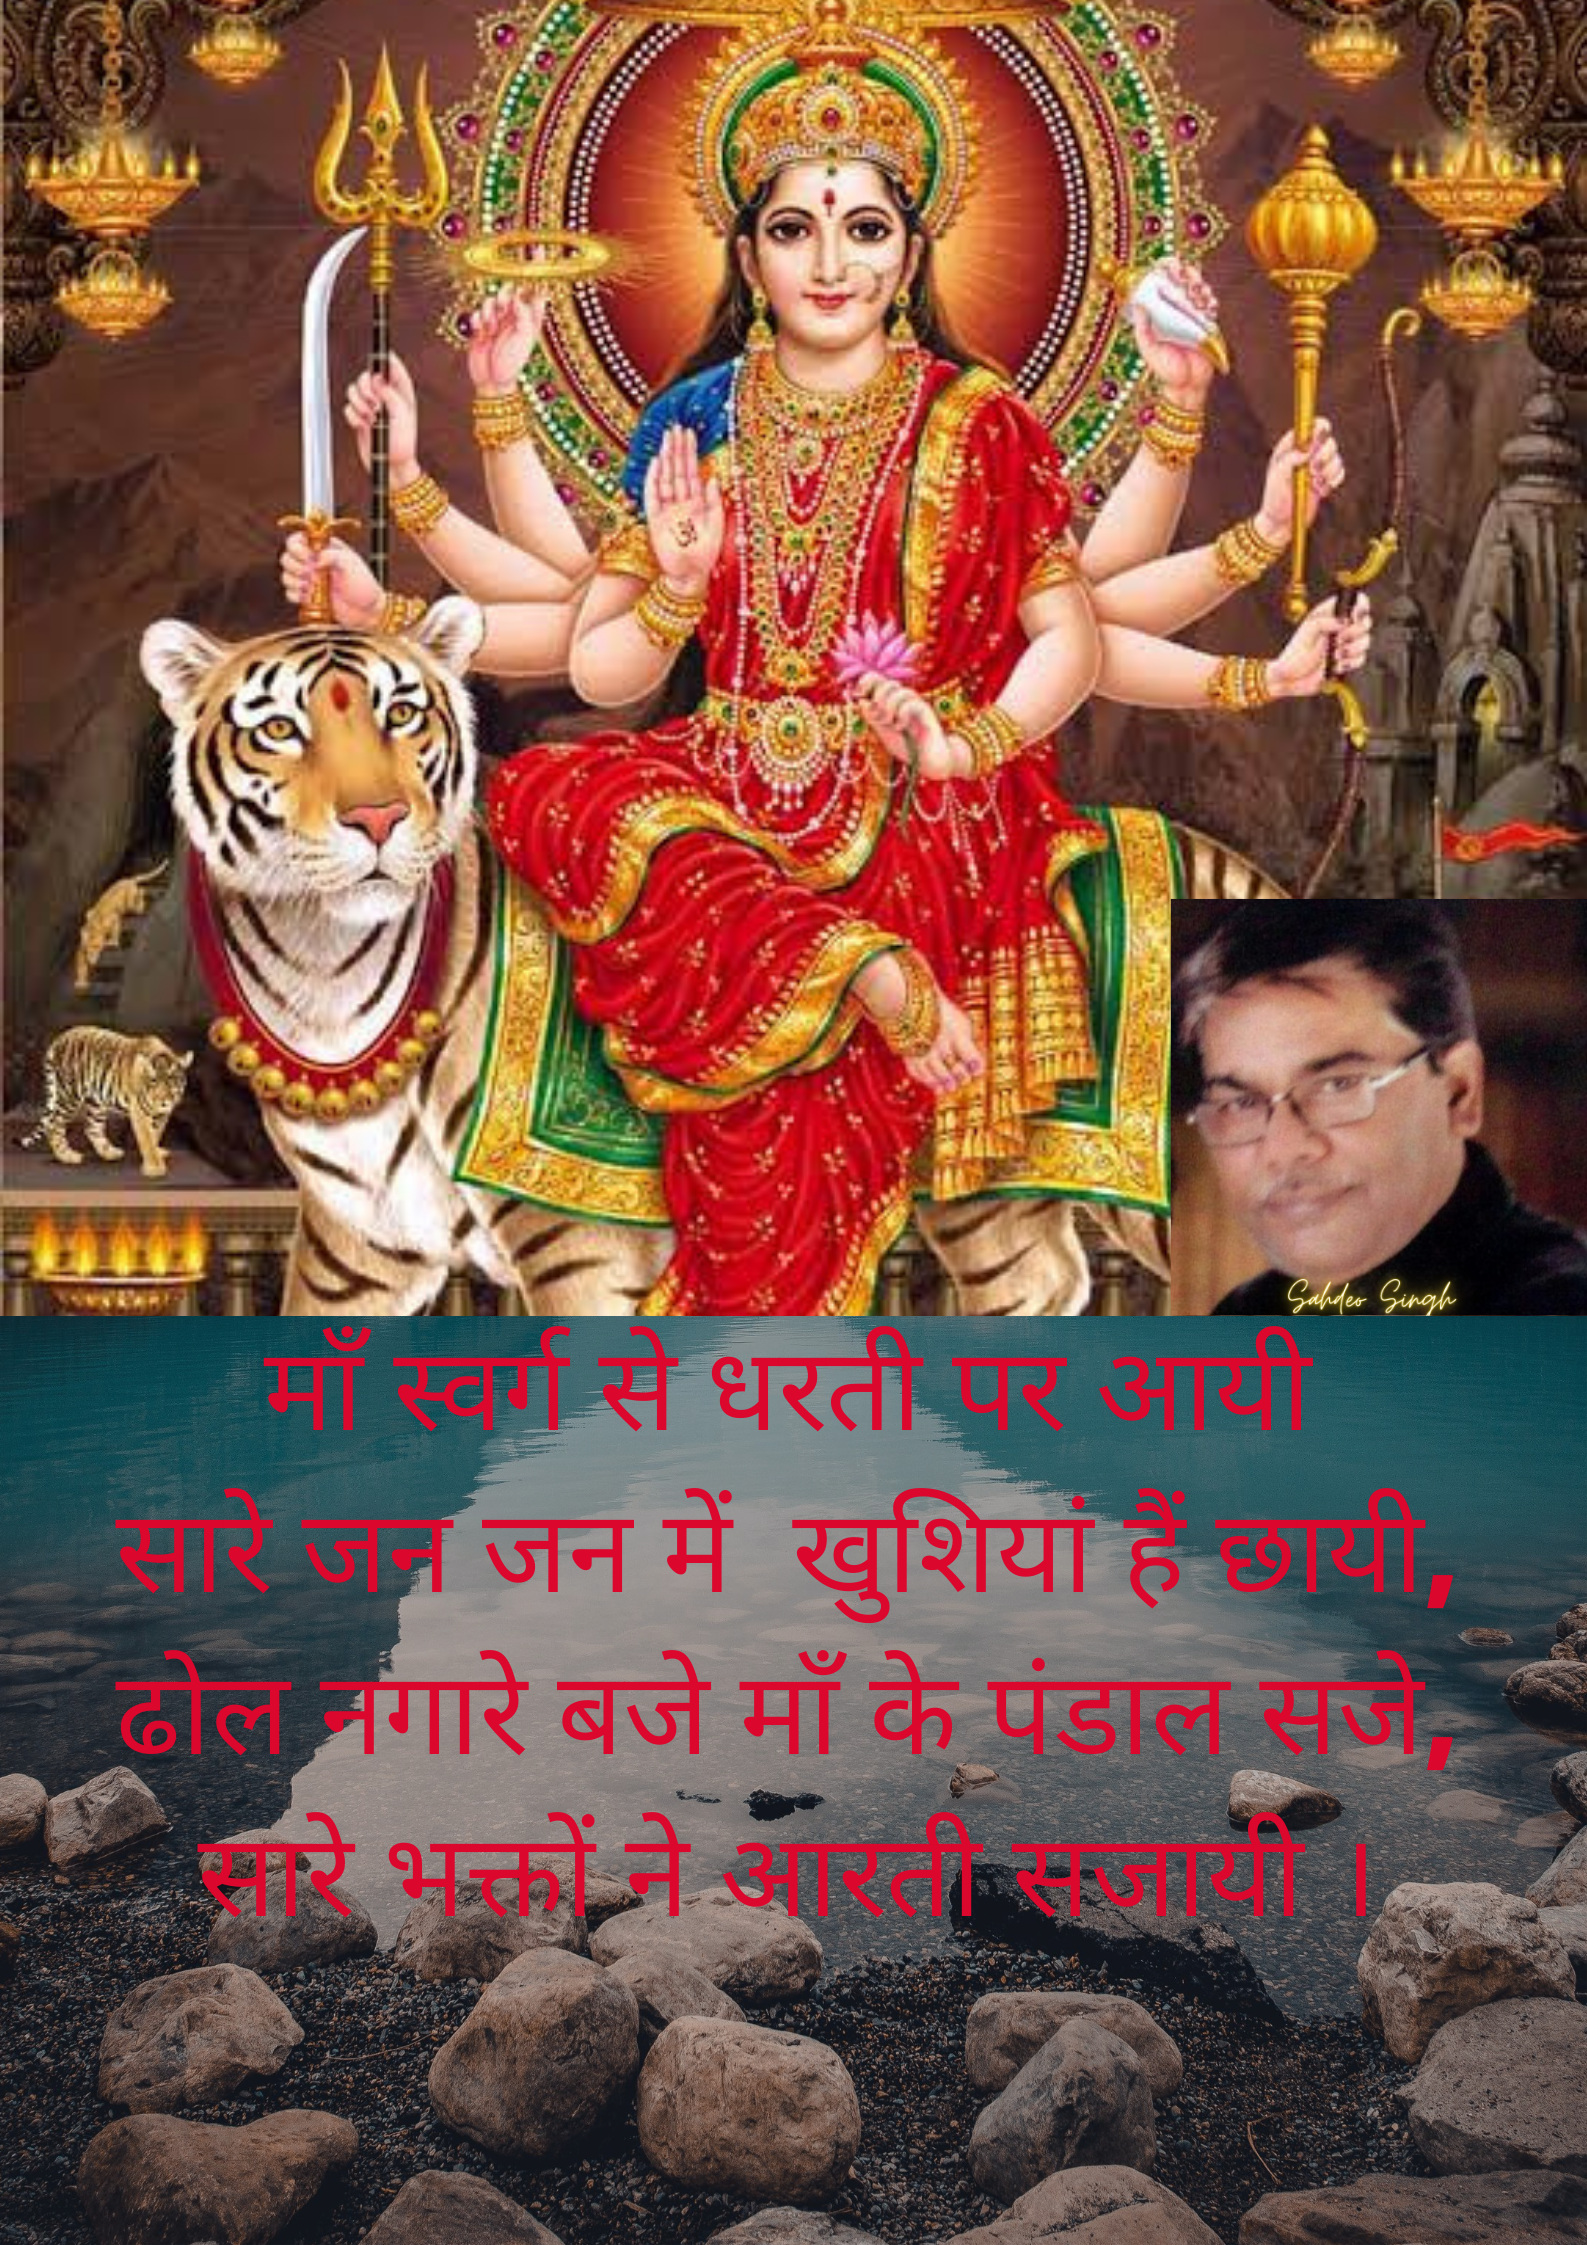 शक्ति स्वरूपा माँ दुर्गा's image